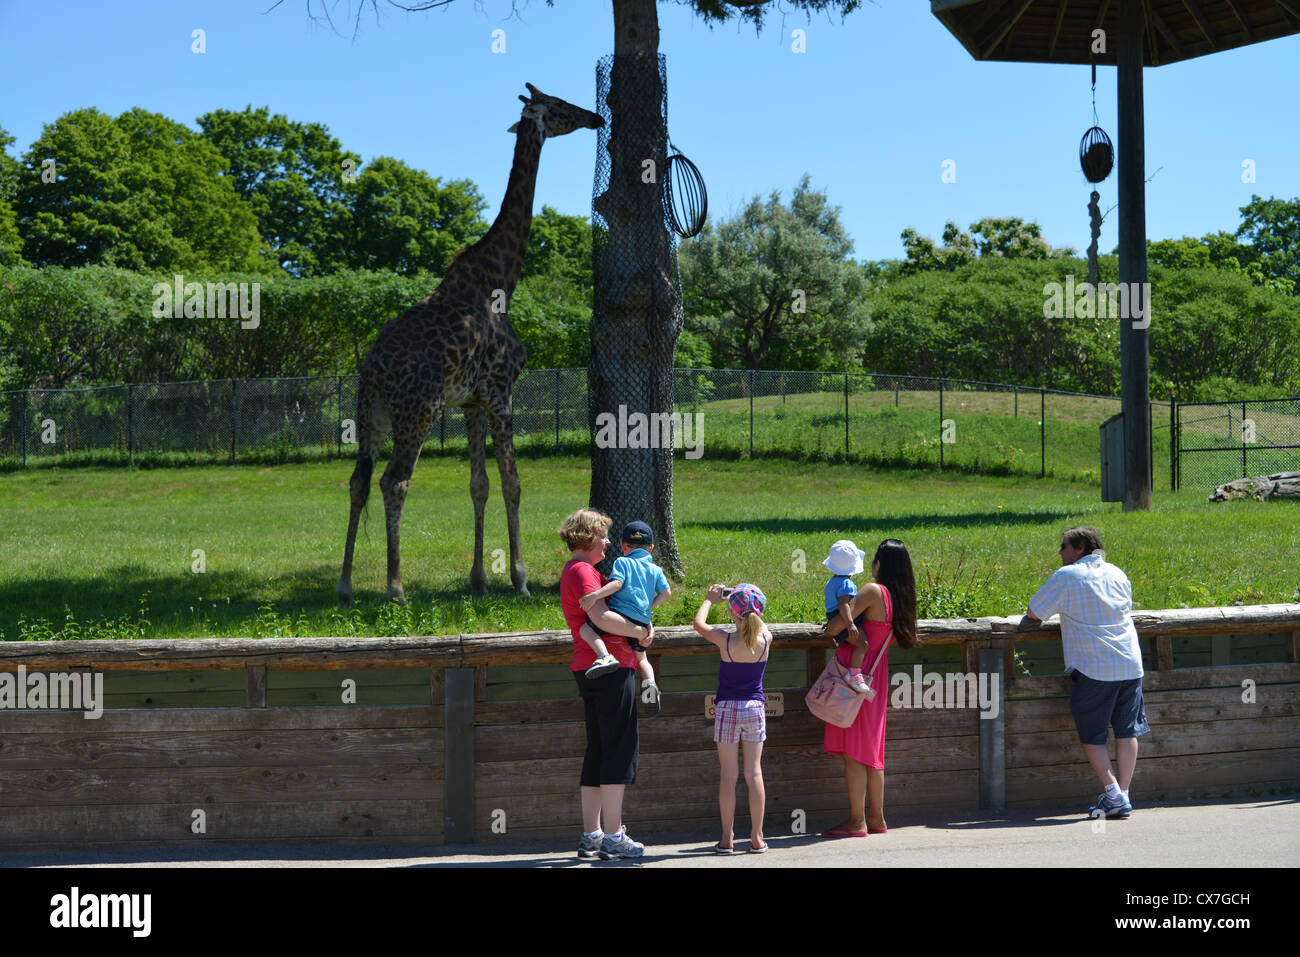 Si tratta di una immagine di una giraffa presso lo zoo di Toronto Foto Stock